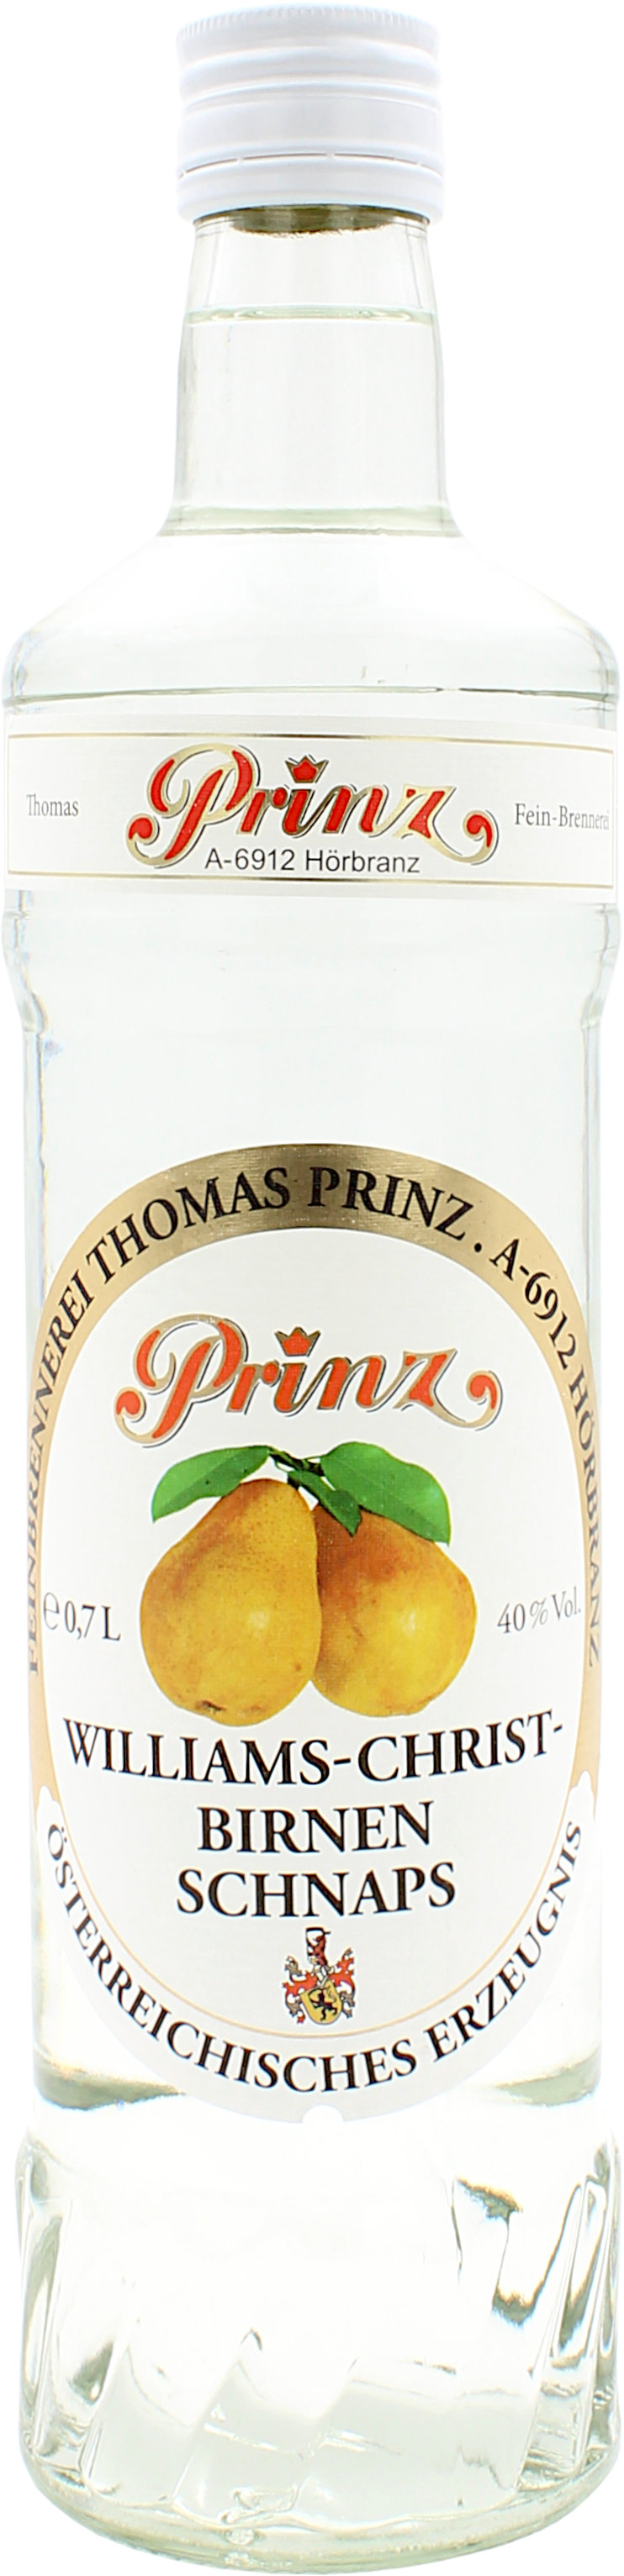 Prinz Williams-Christ-Birnen Schnaps 40.0% 0,7l